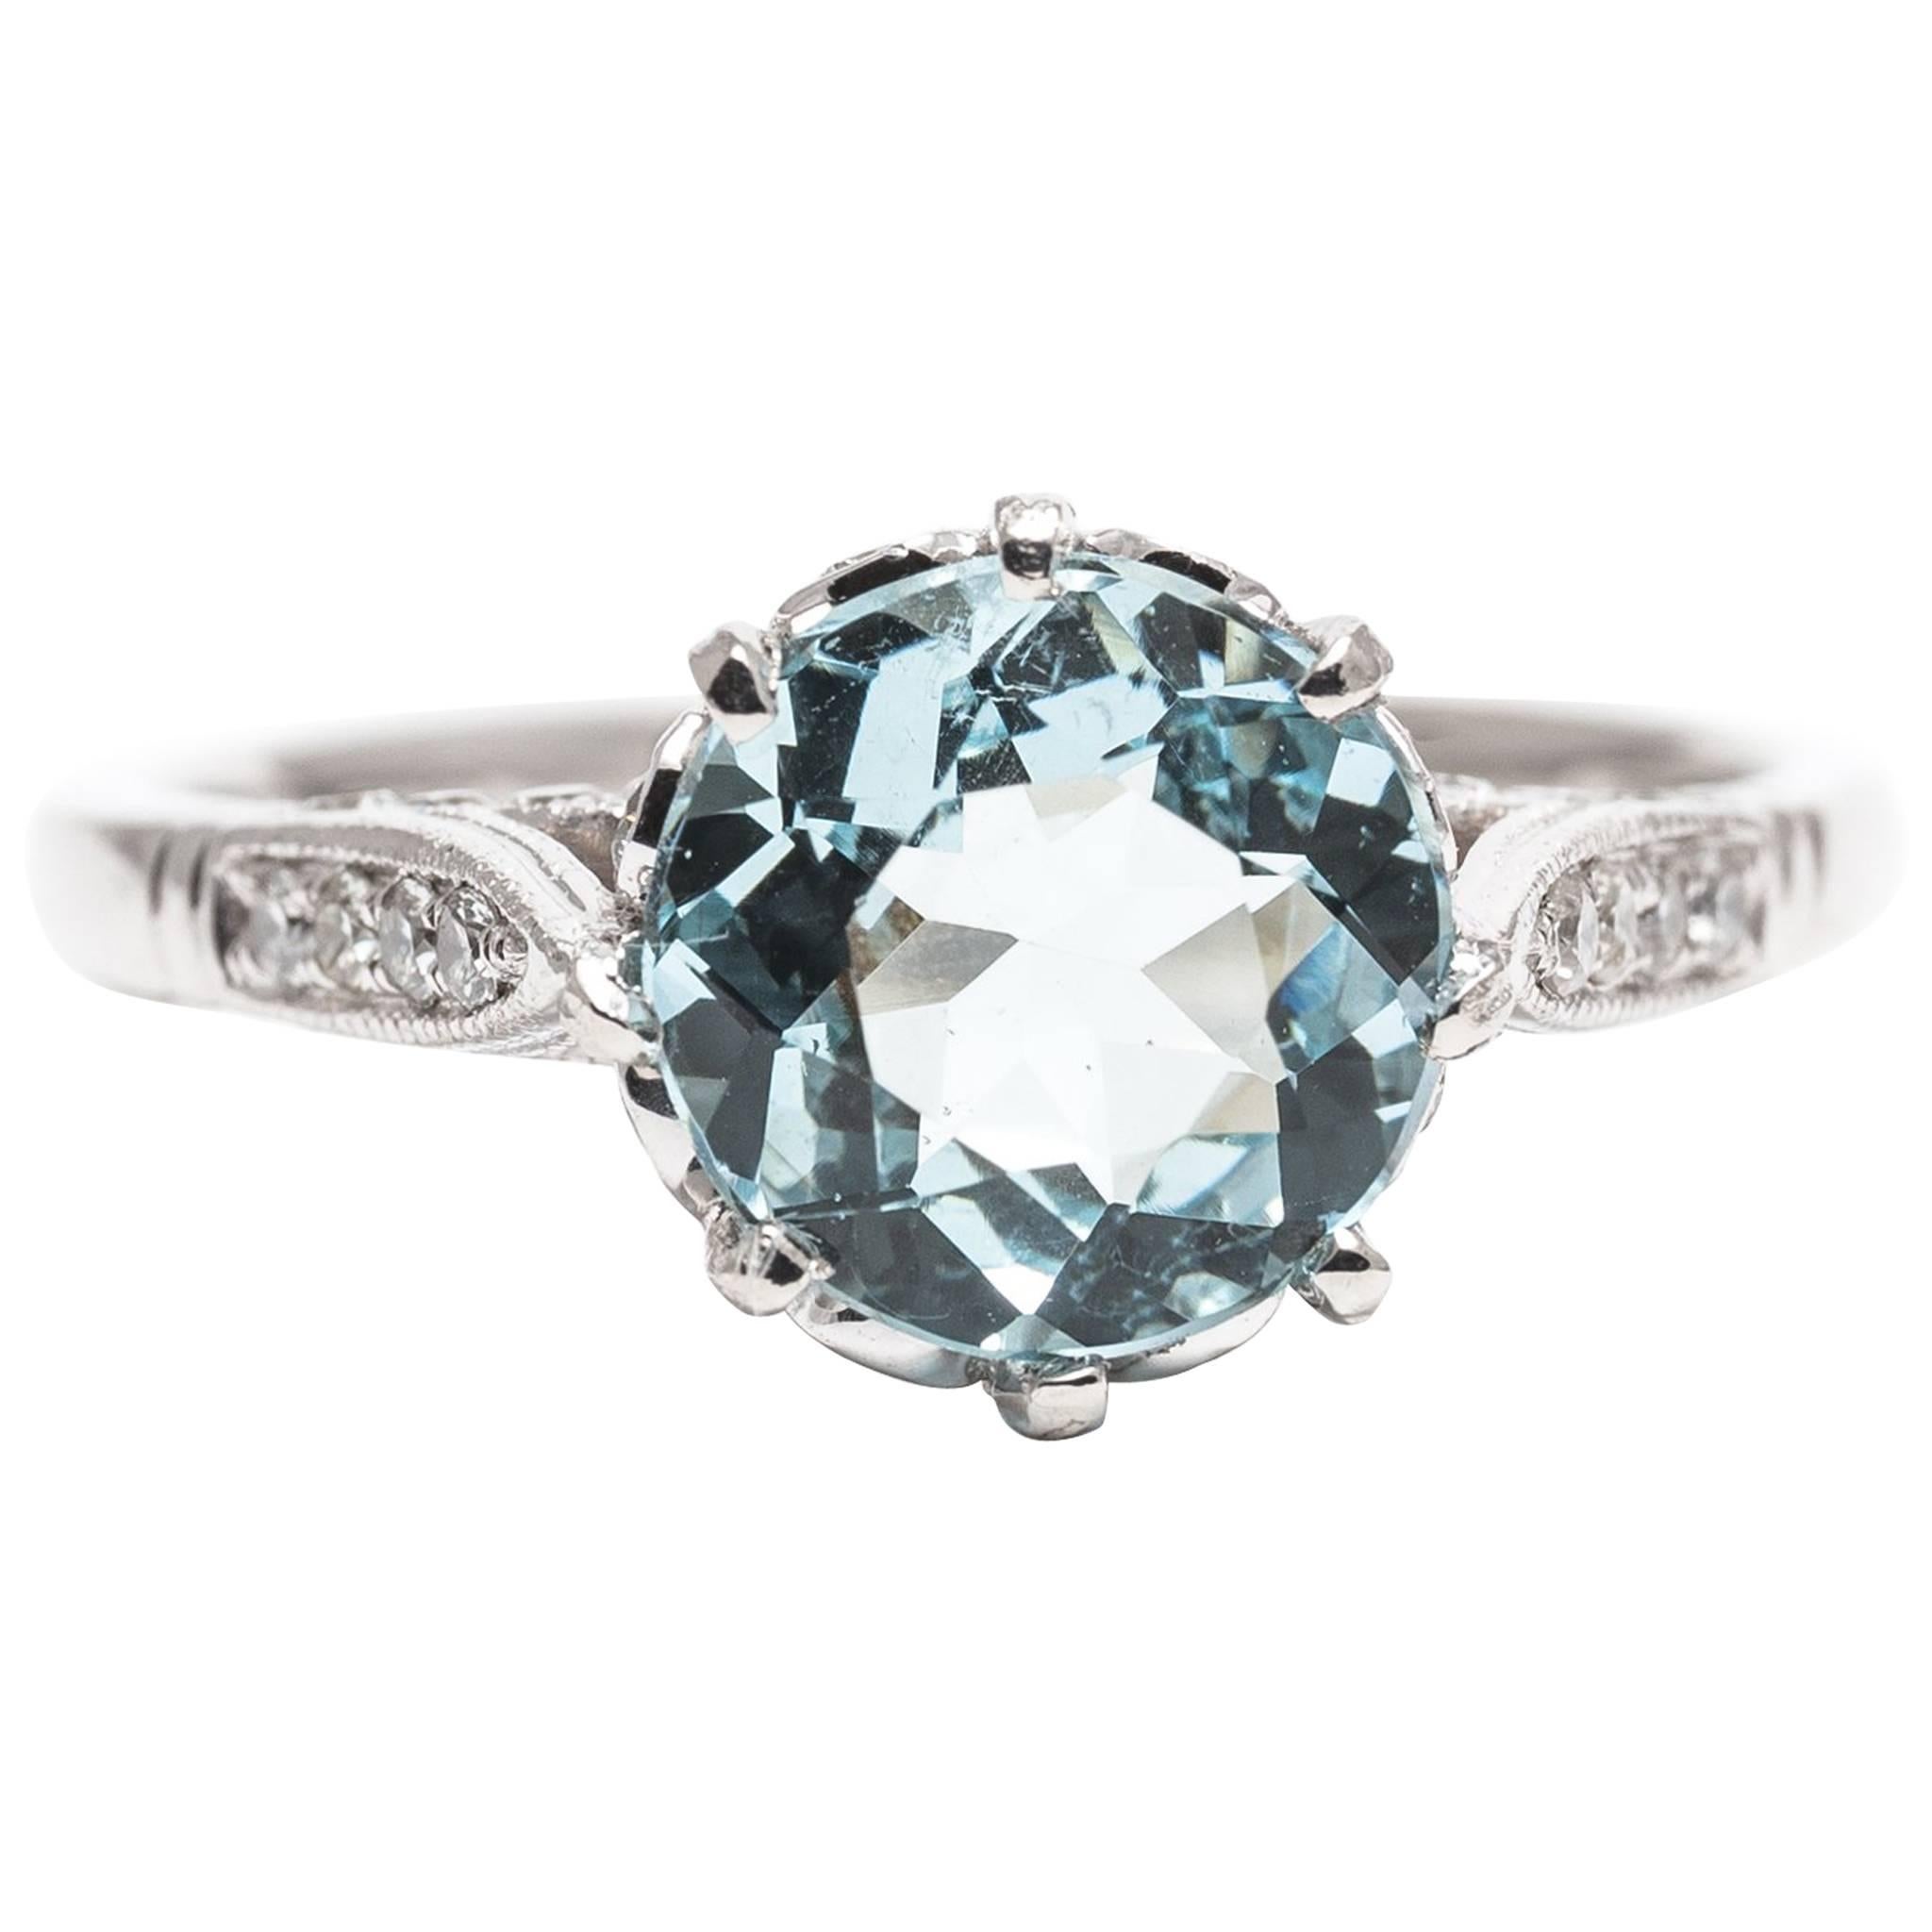  Aquamarine and Pave Diamond Ring in Platinum